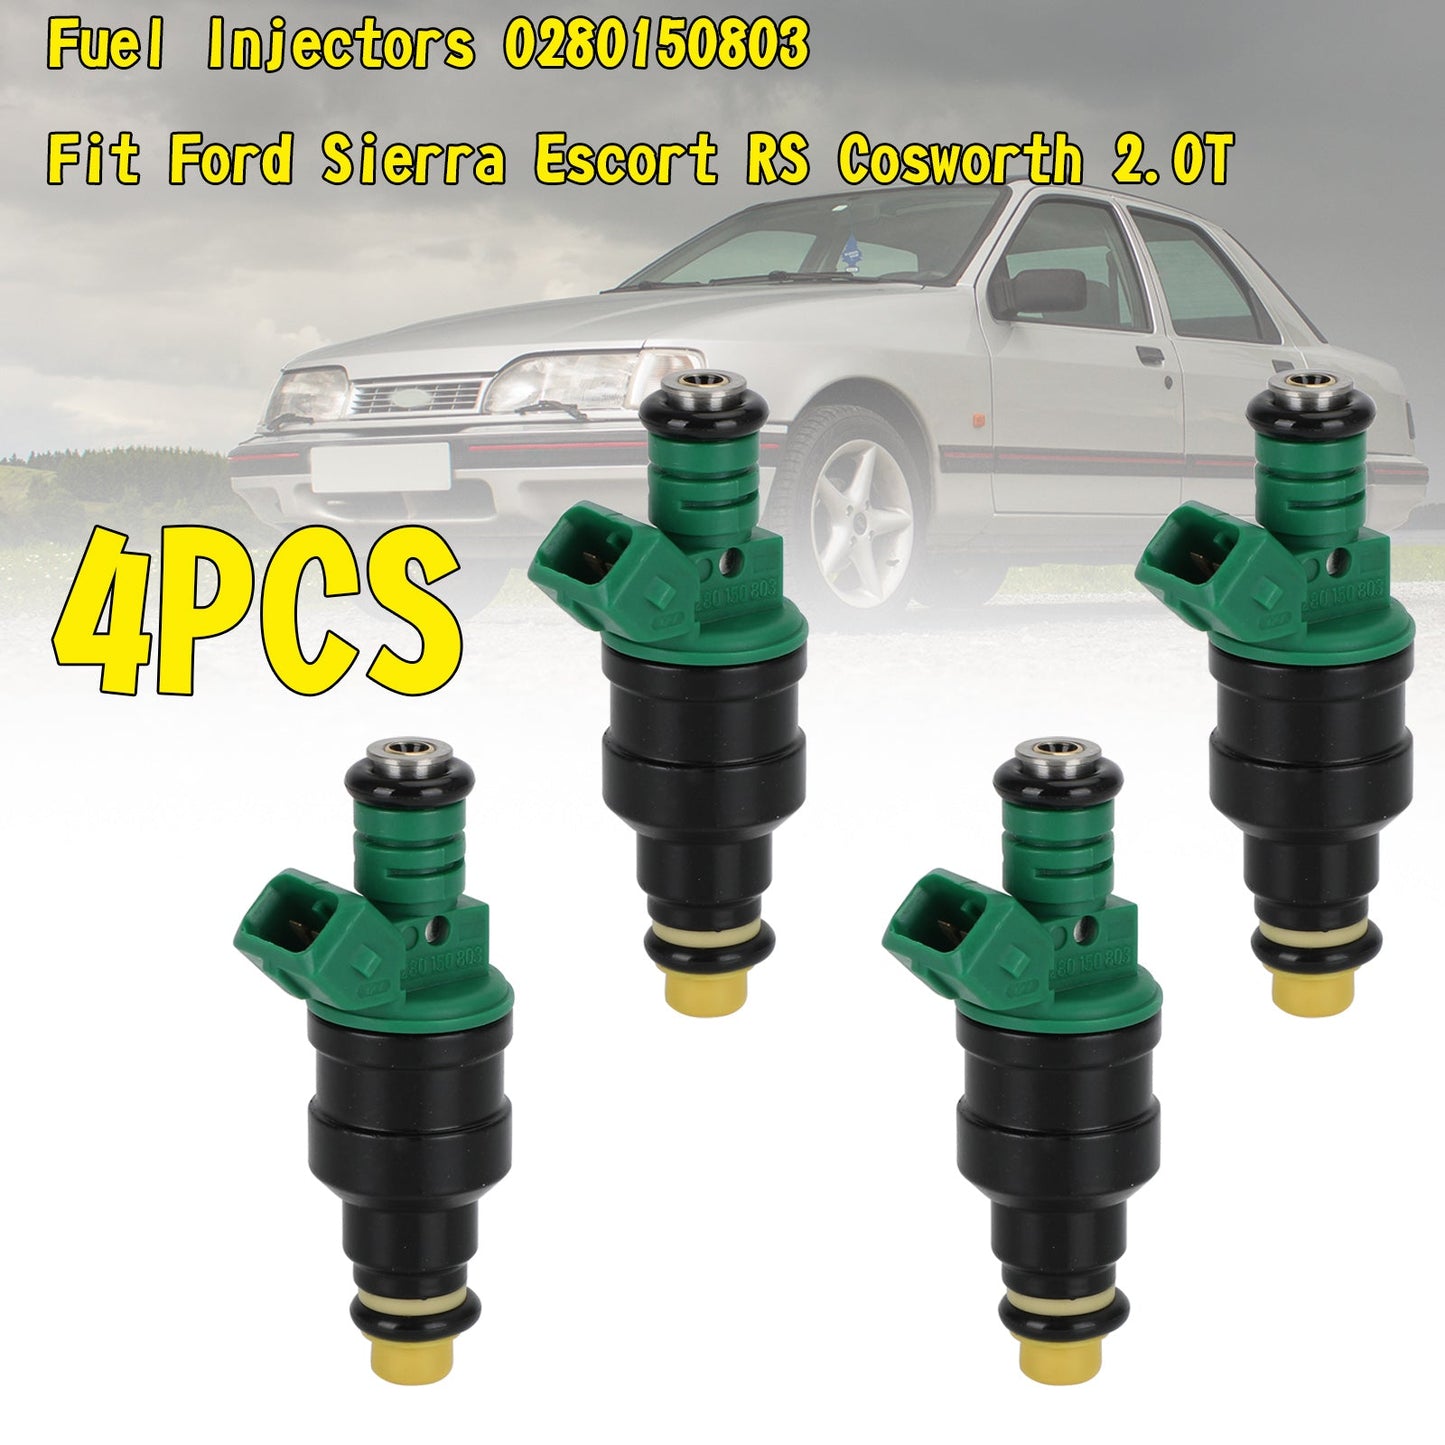 4PCS Fuel Injectors 0280150803 Fit Ford Sierra Escort RS Cosworth 2.0T